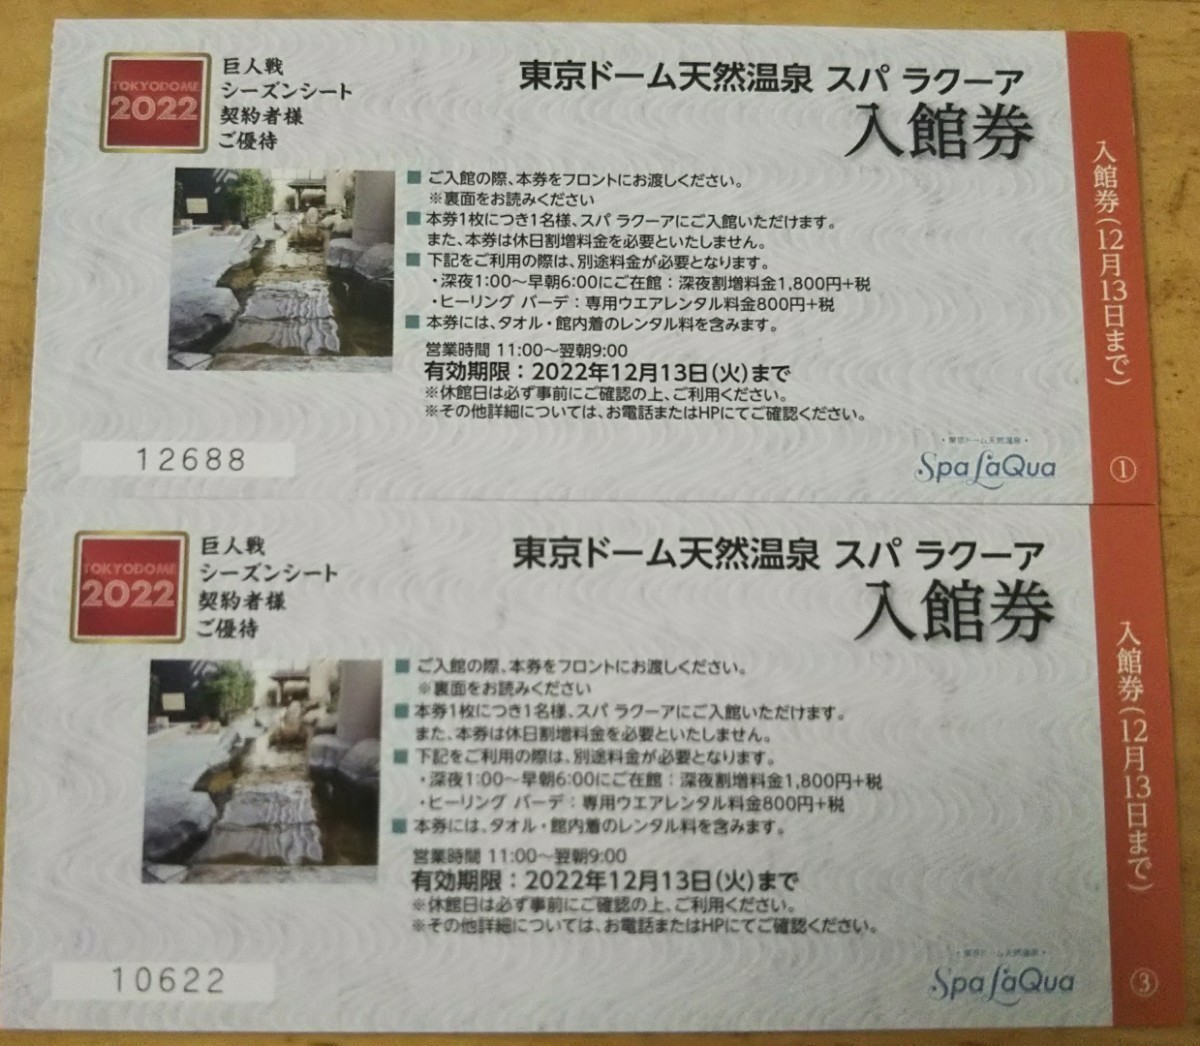 ≪4枚分≫【2022年12月13日まで有効】土日祝日の休日割増料金は、不要。東京ドーム スパラクーアの全日無料入館券。シーズン 